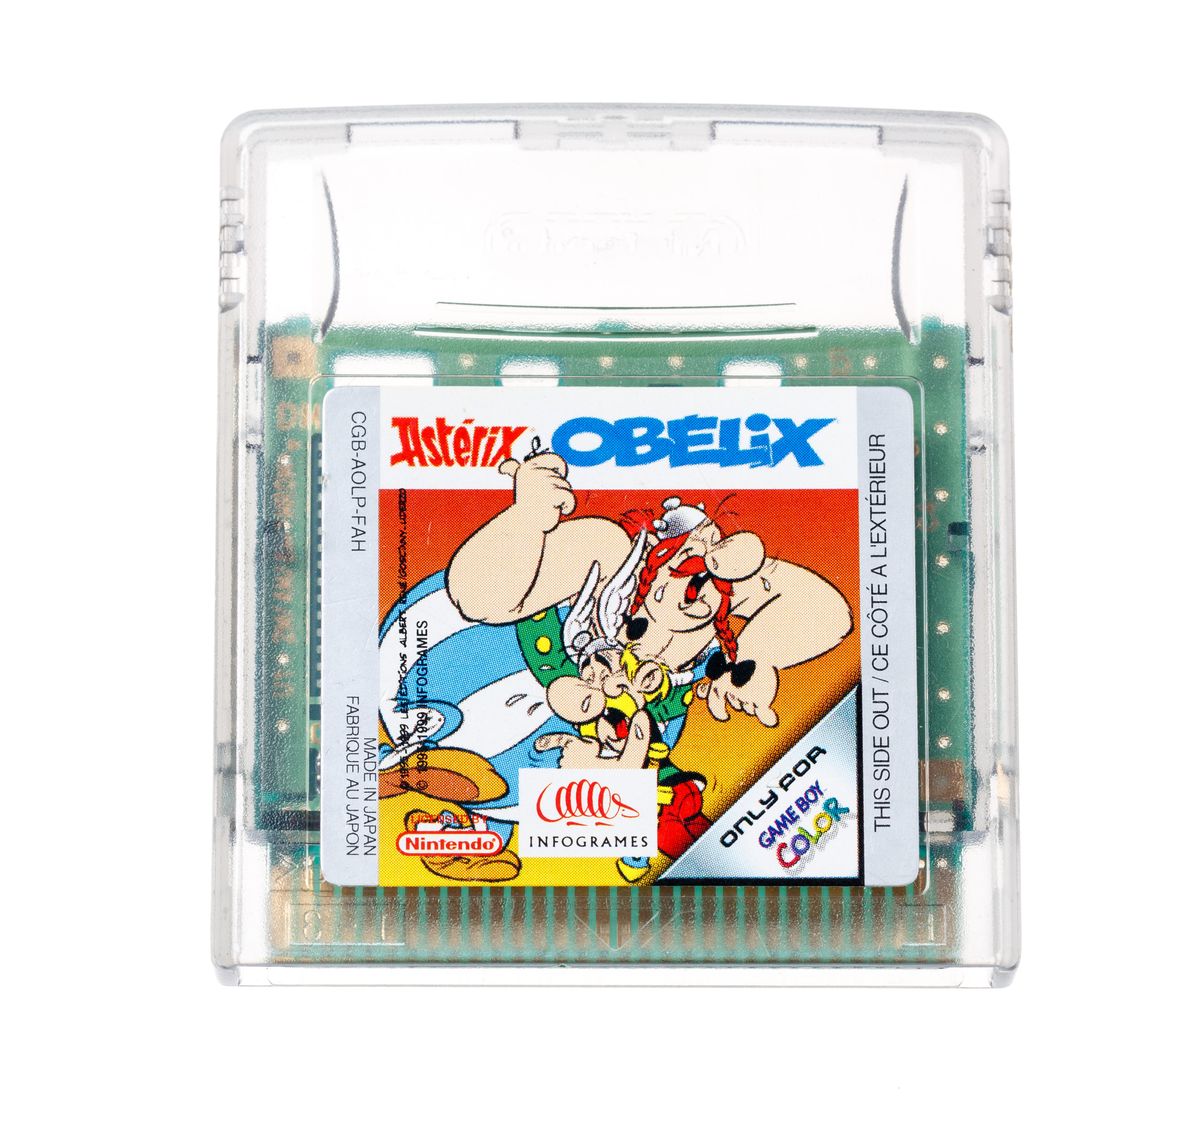 Asterix & Obelix | Gameboy Color Games | RetroNintendoKopen.nl